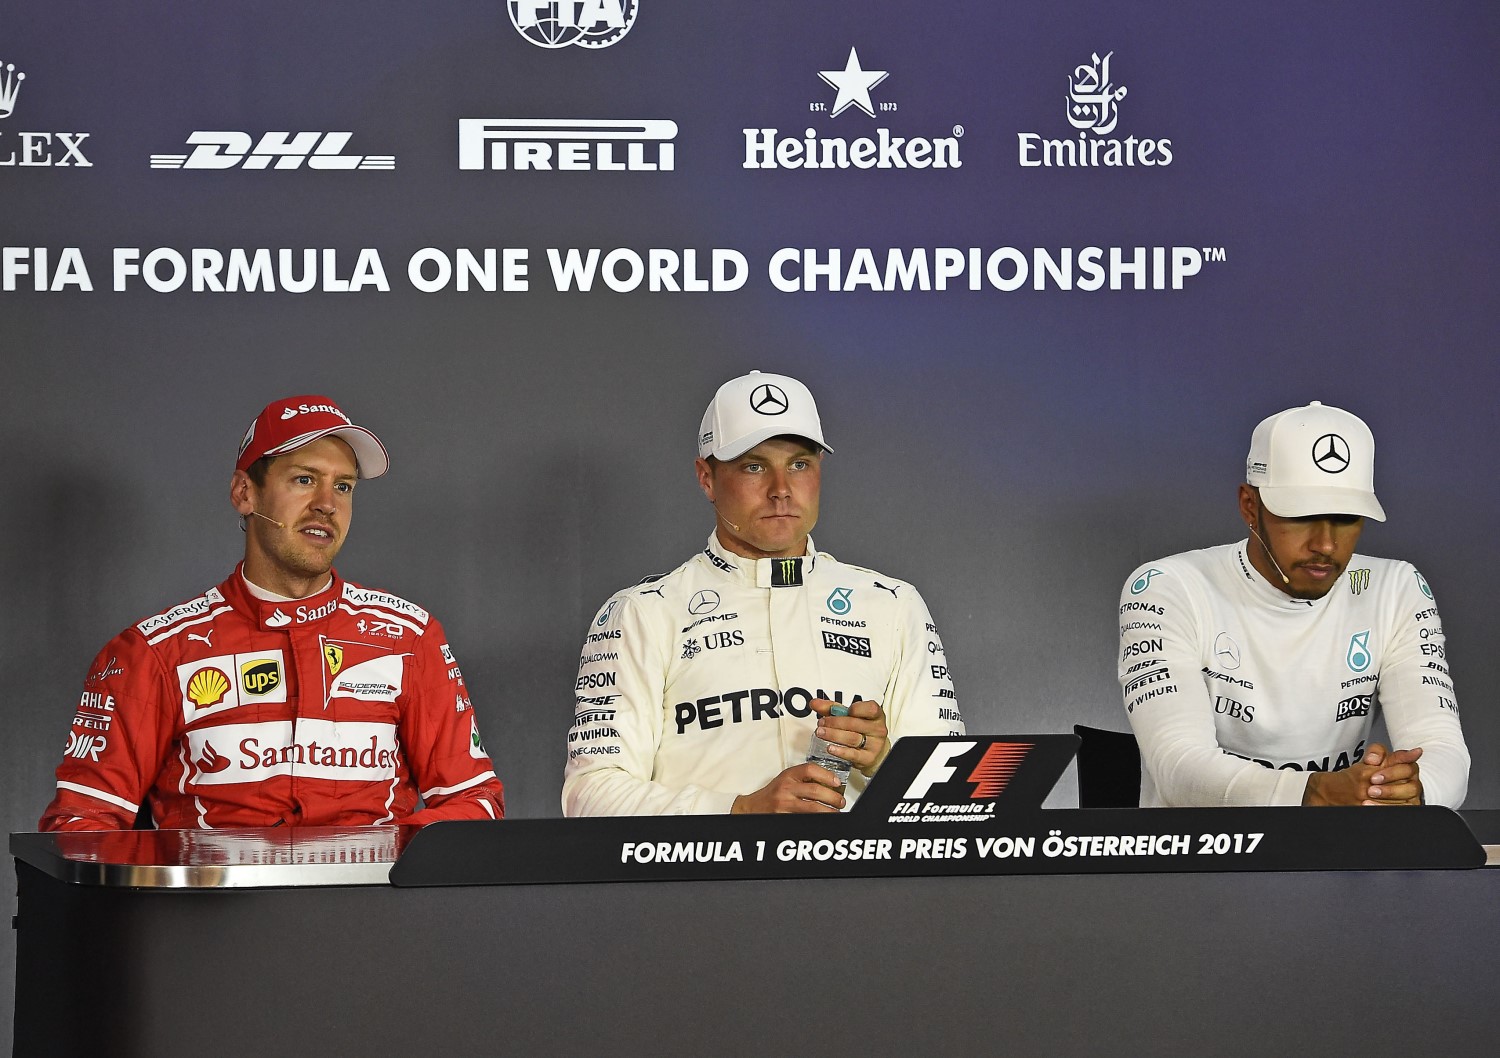 From left, Vettel, Bottas and Hamilton